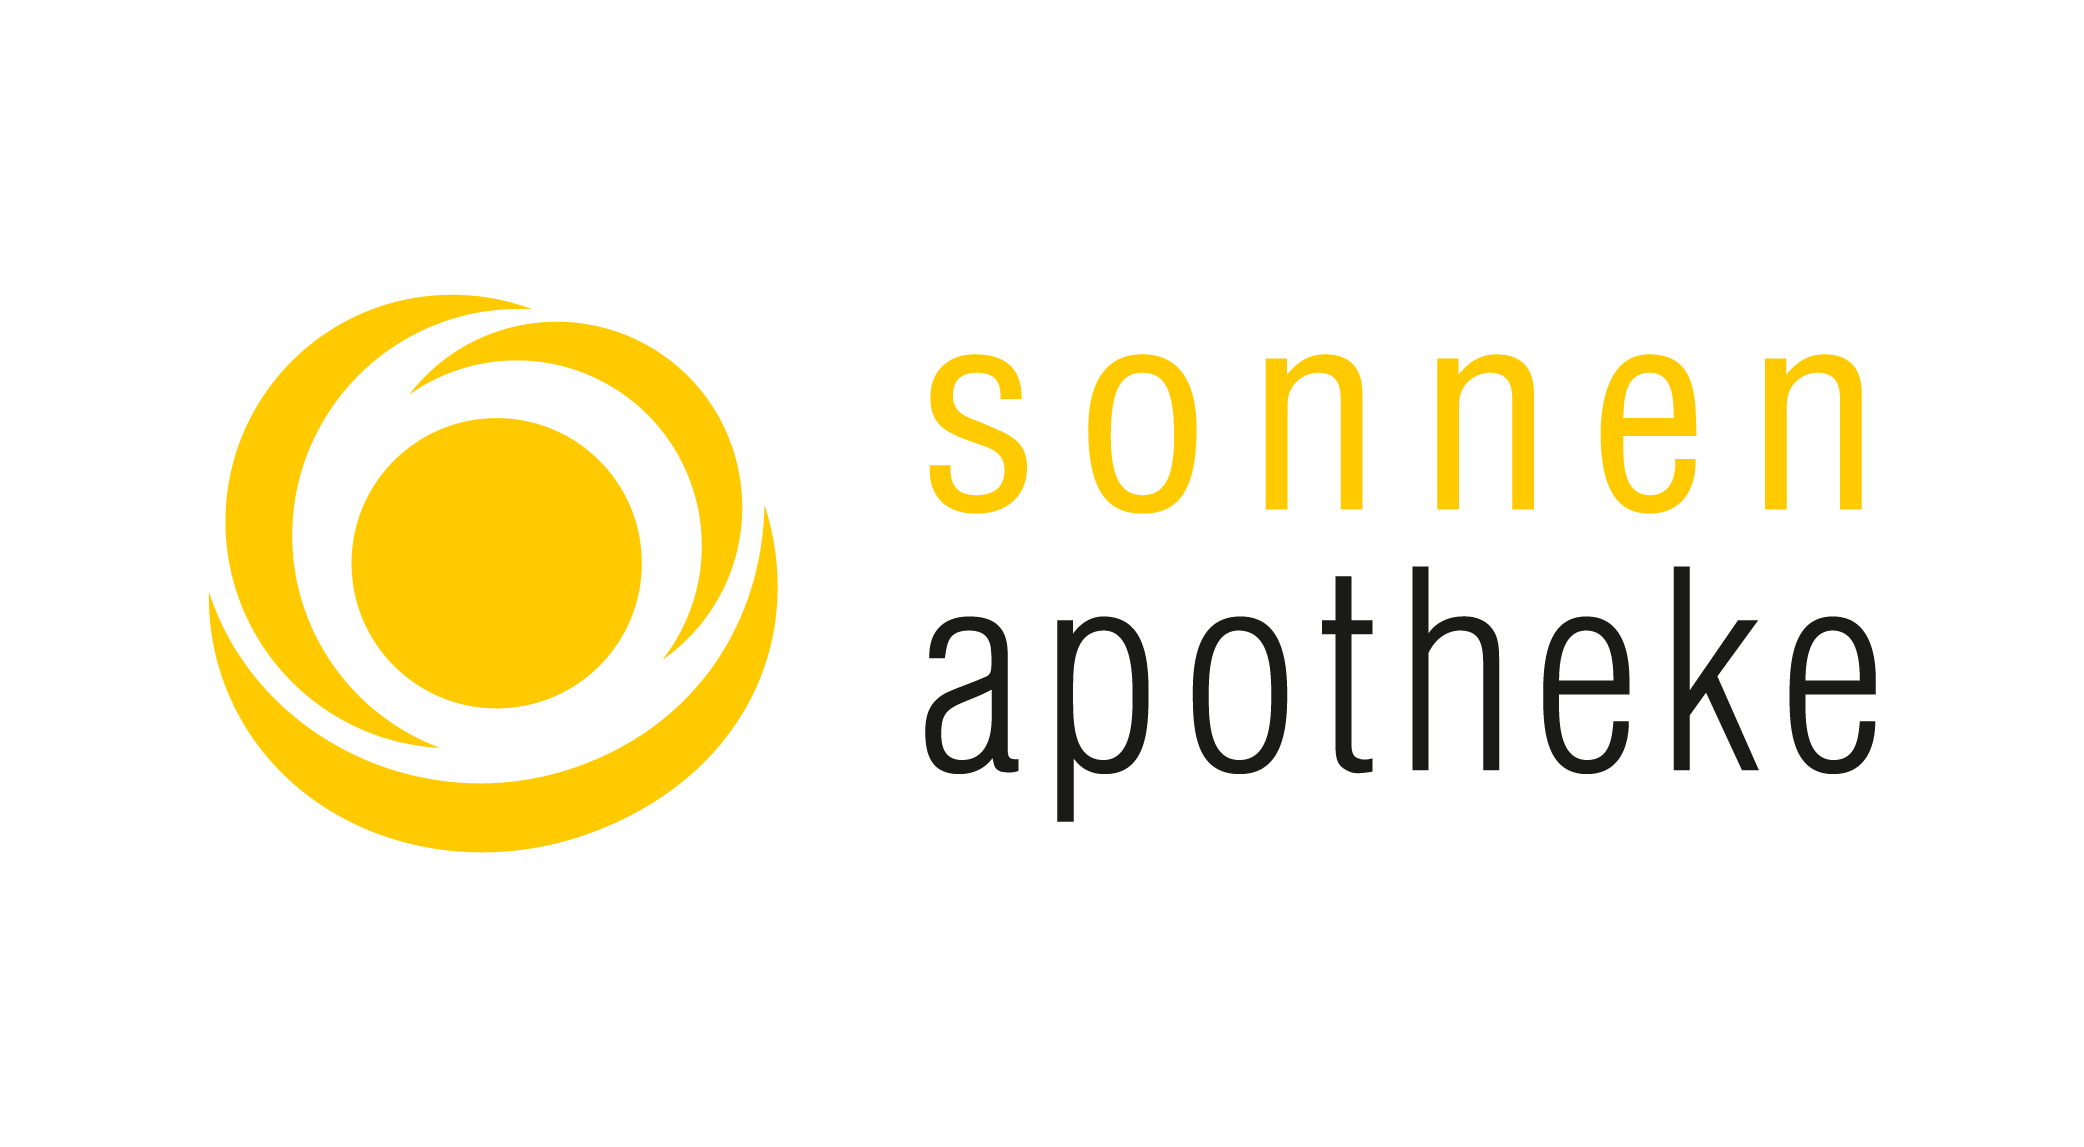 Logo Sonnenapotheke